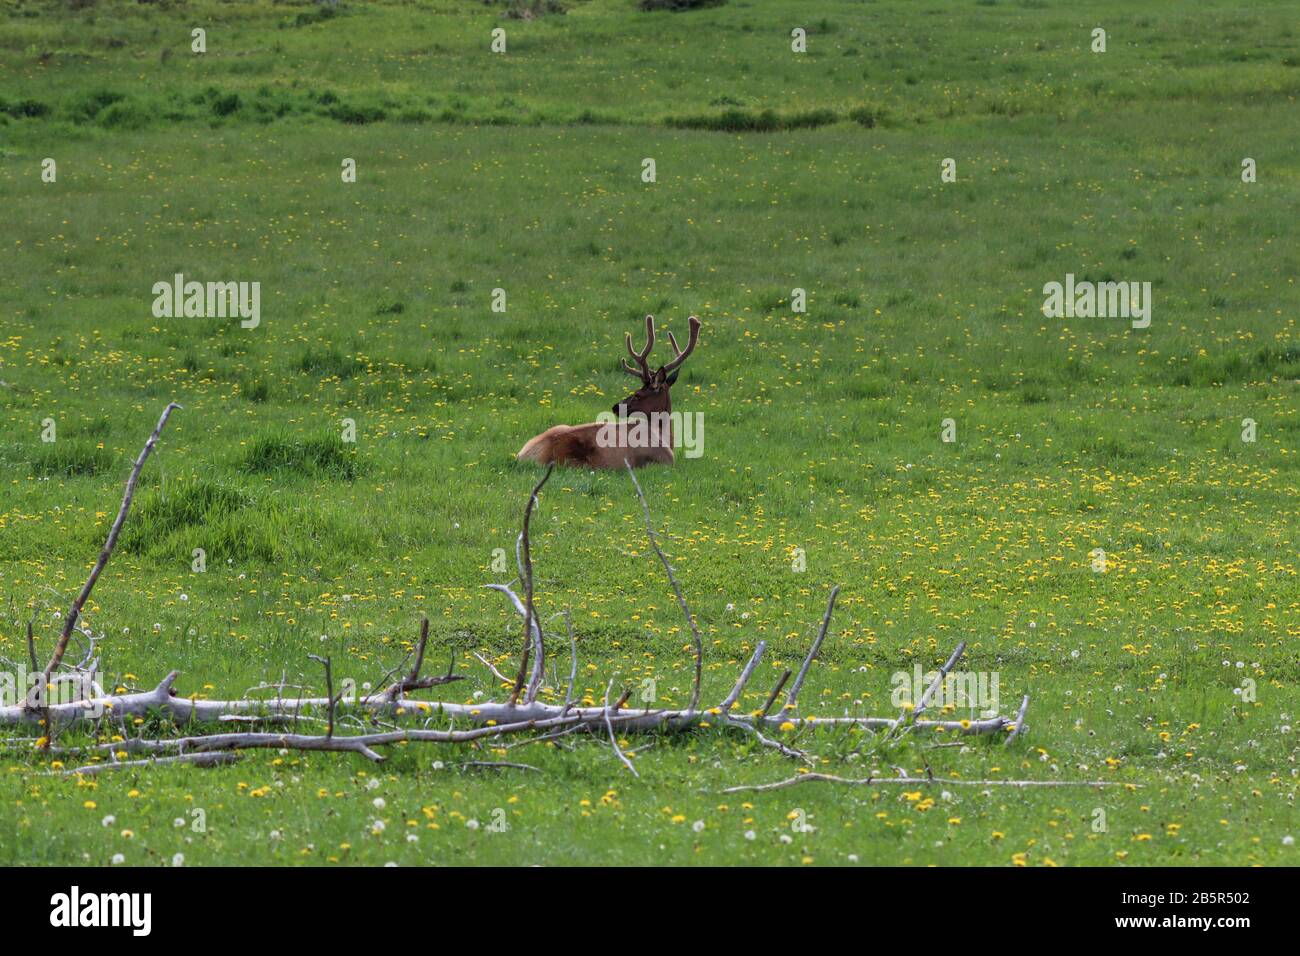 Un par de alces de pie en la cima de un exuberante campo verde. Fotografía de alta calidad Foto de stock